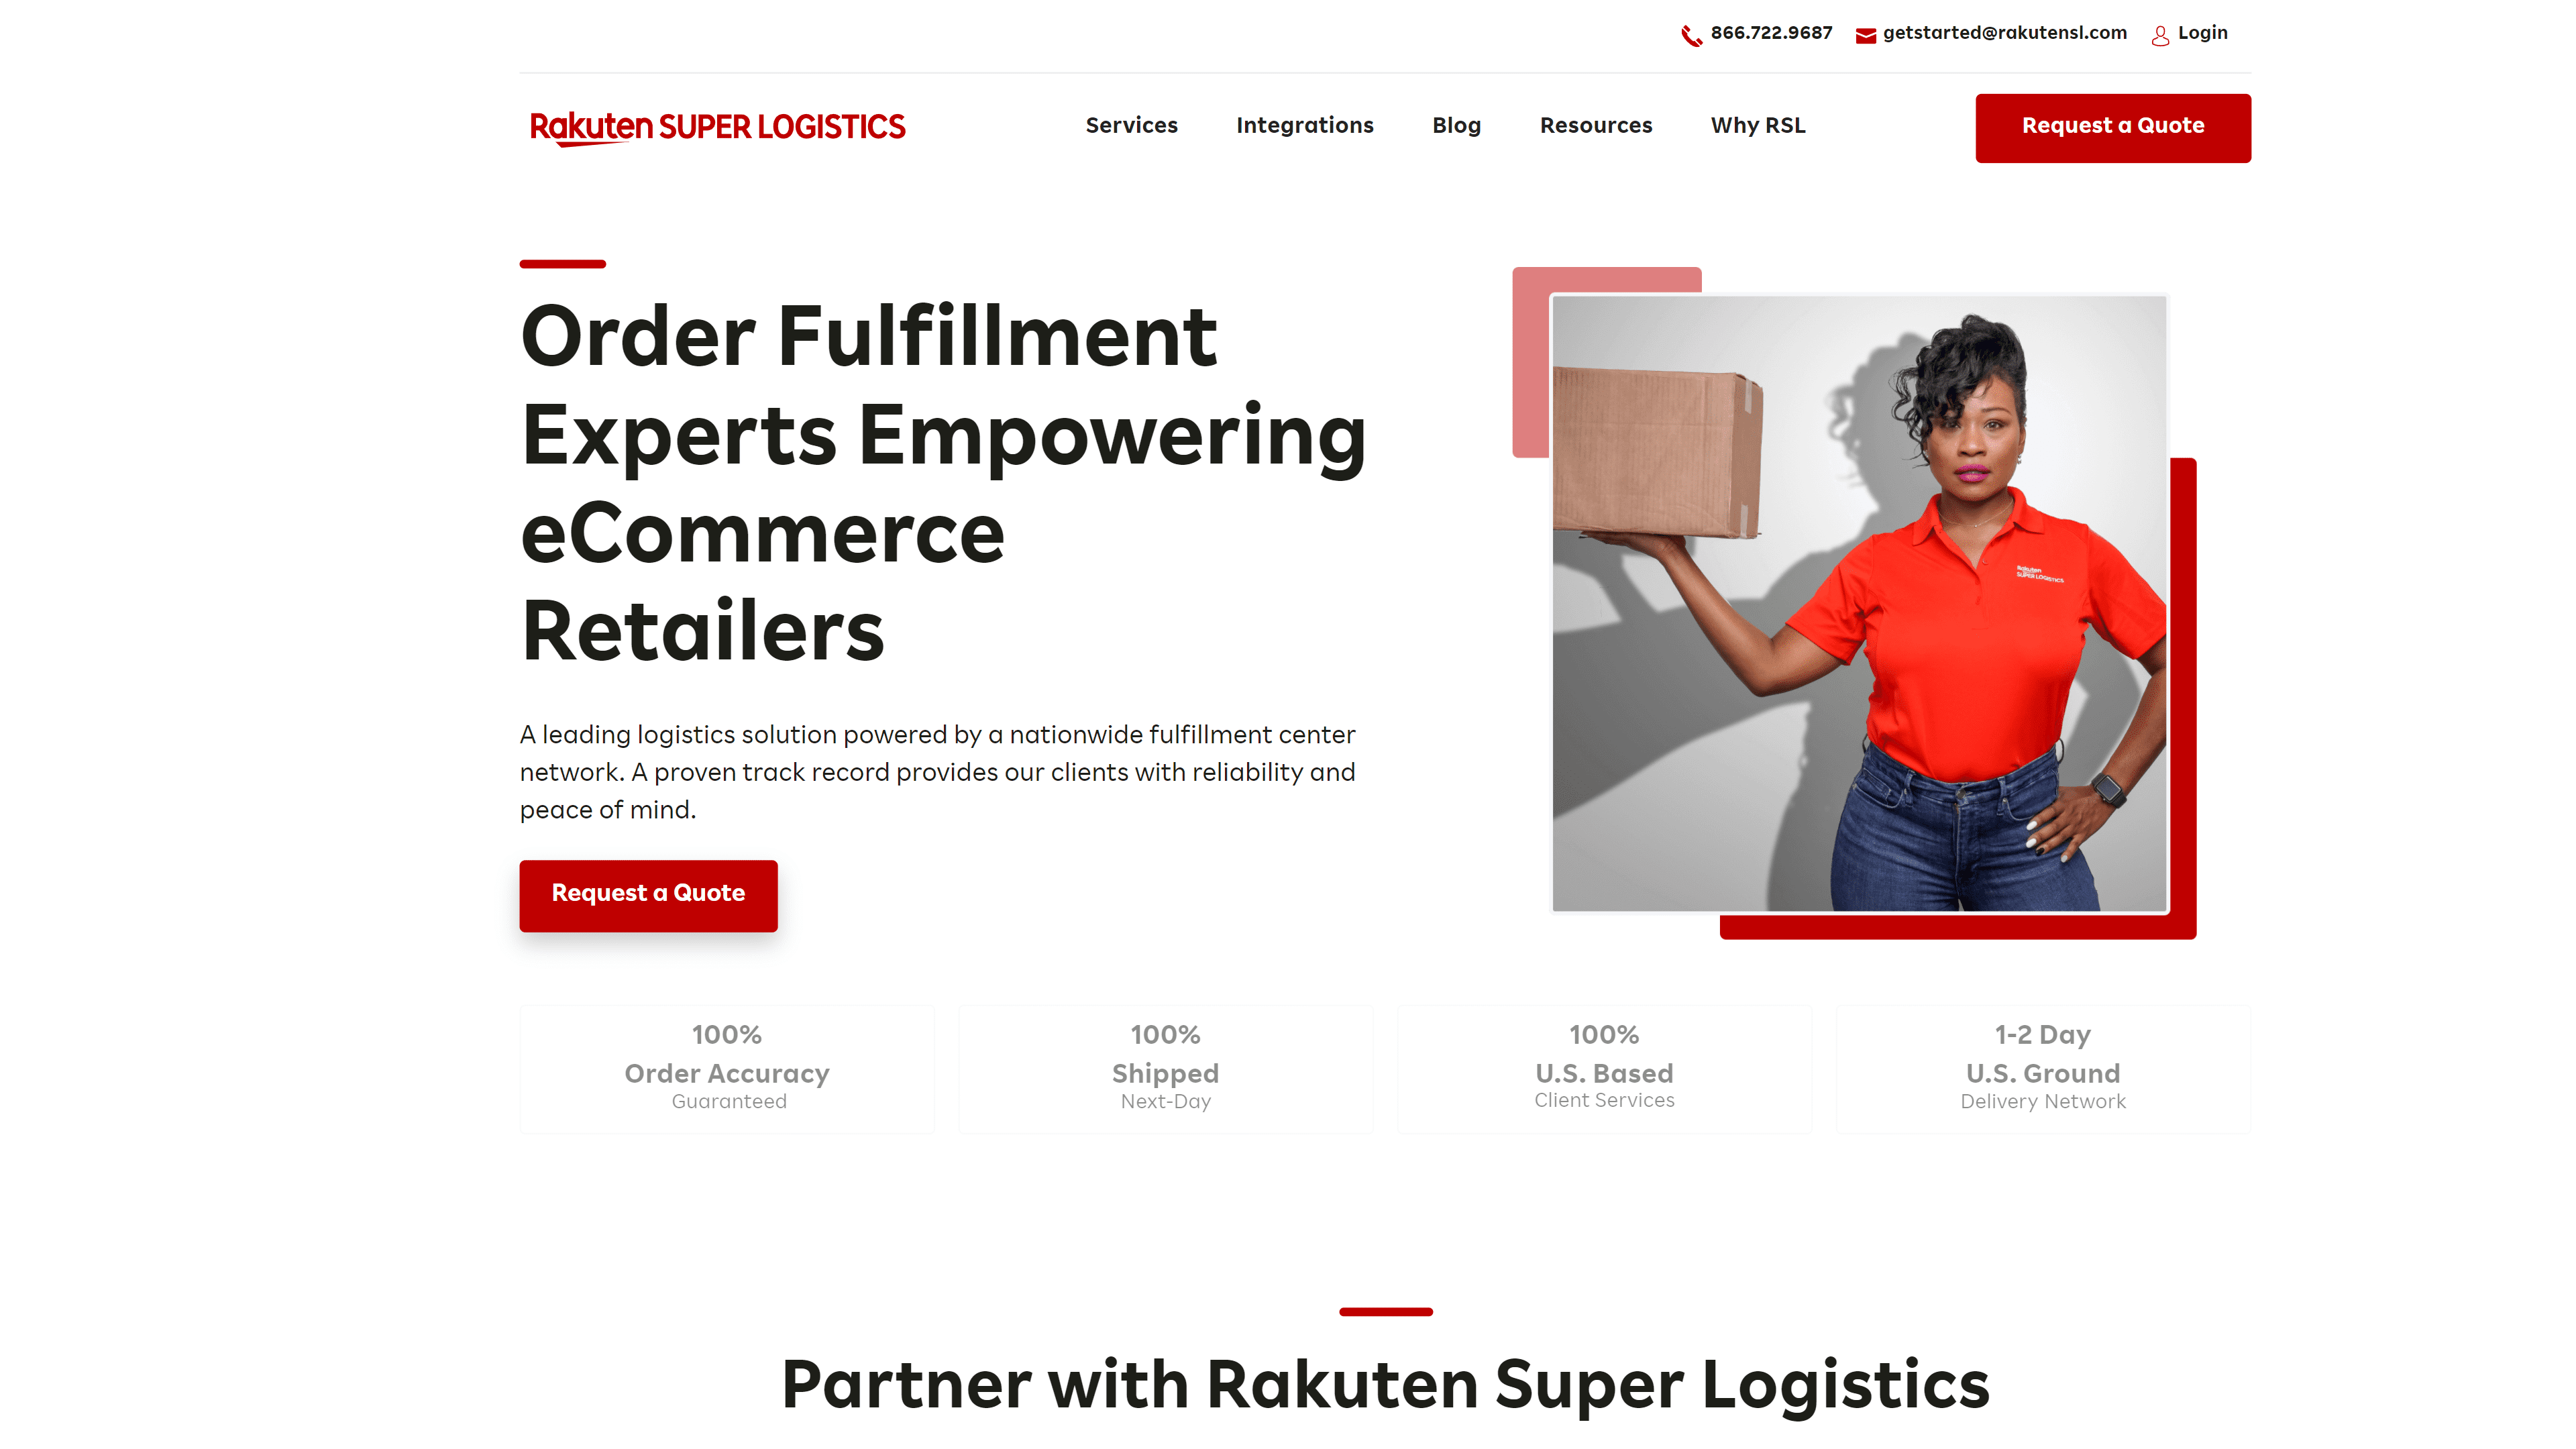 Rakuten Super Logistics